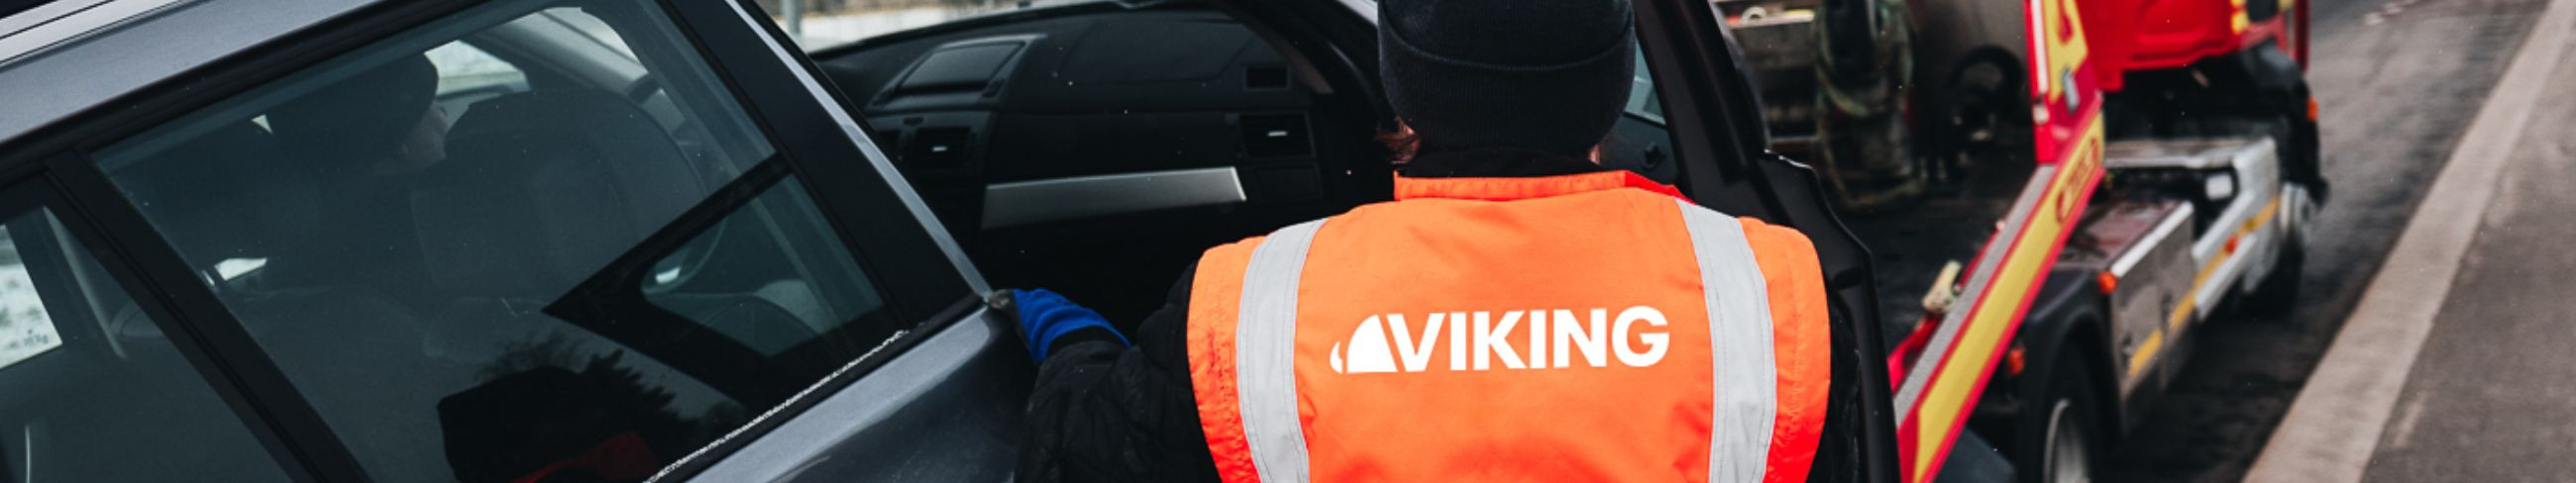 Vikingiga võivad kõik Eesti autoga sõitjad olla kindlad, et saavad vajaliku abi millal iganes seda vajavad.